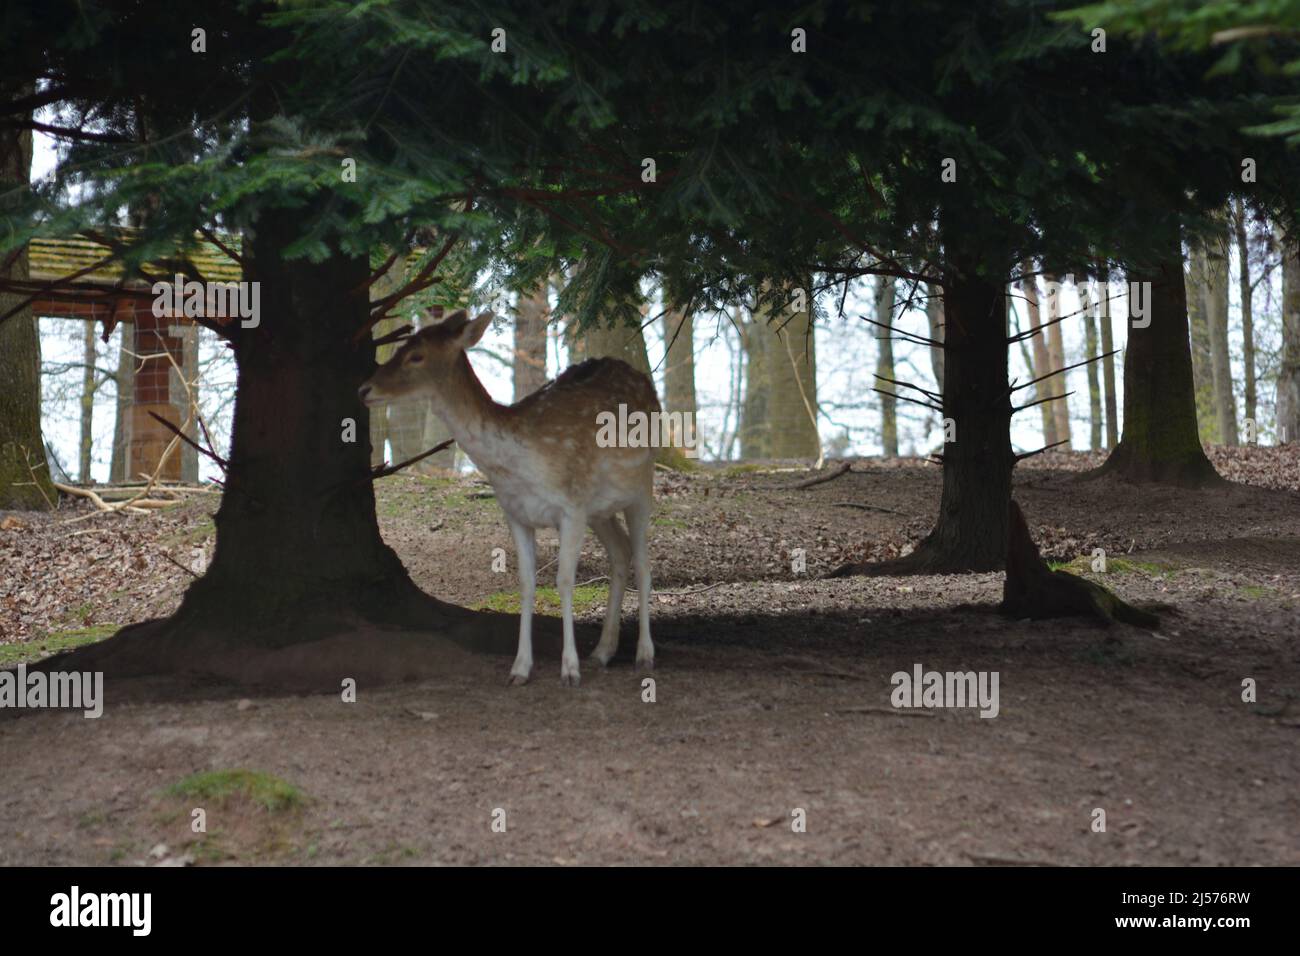 Un cerf debout sous un arbre à Tripsdrill, dans le sud de l'Allemagne Banque D'Images